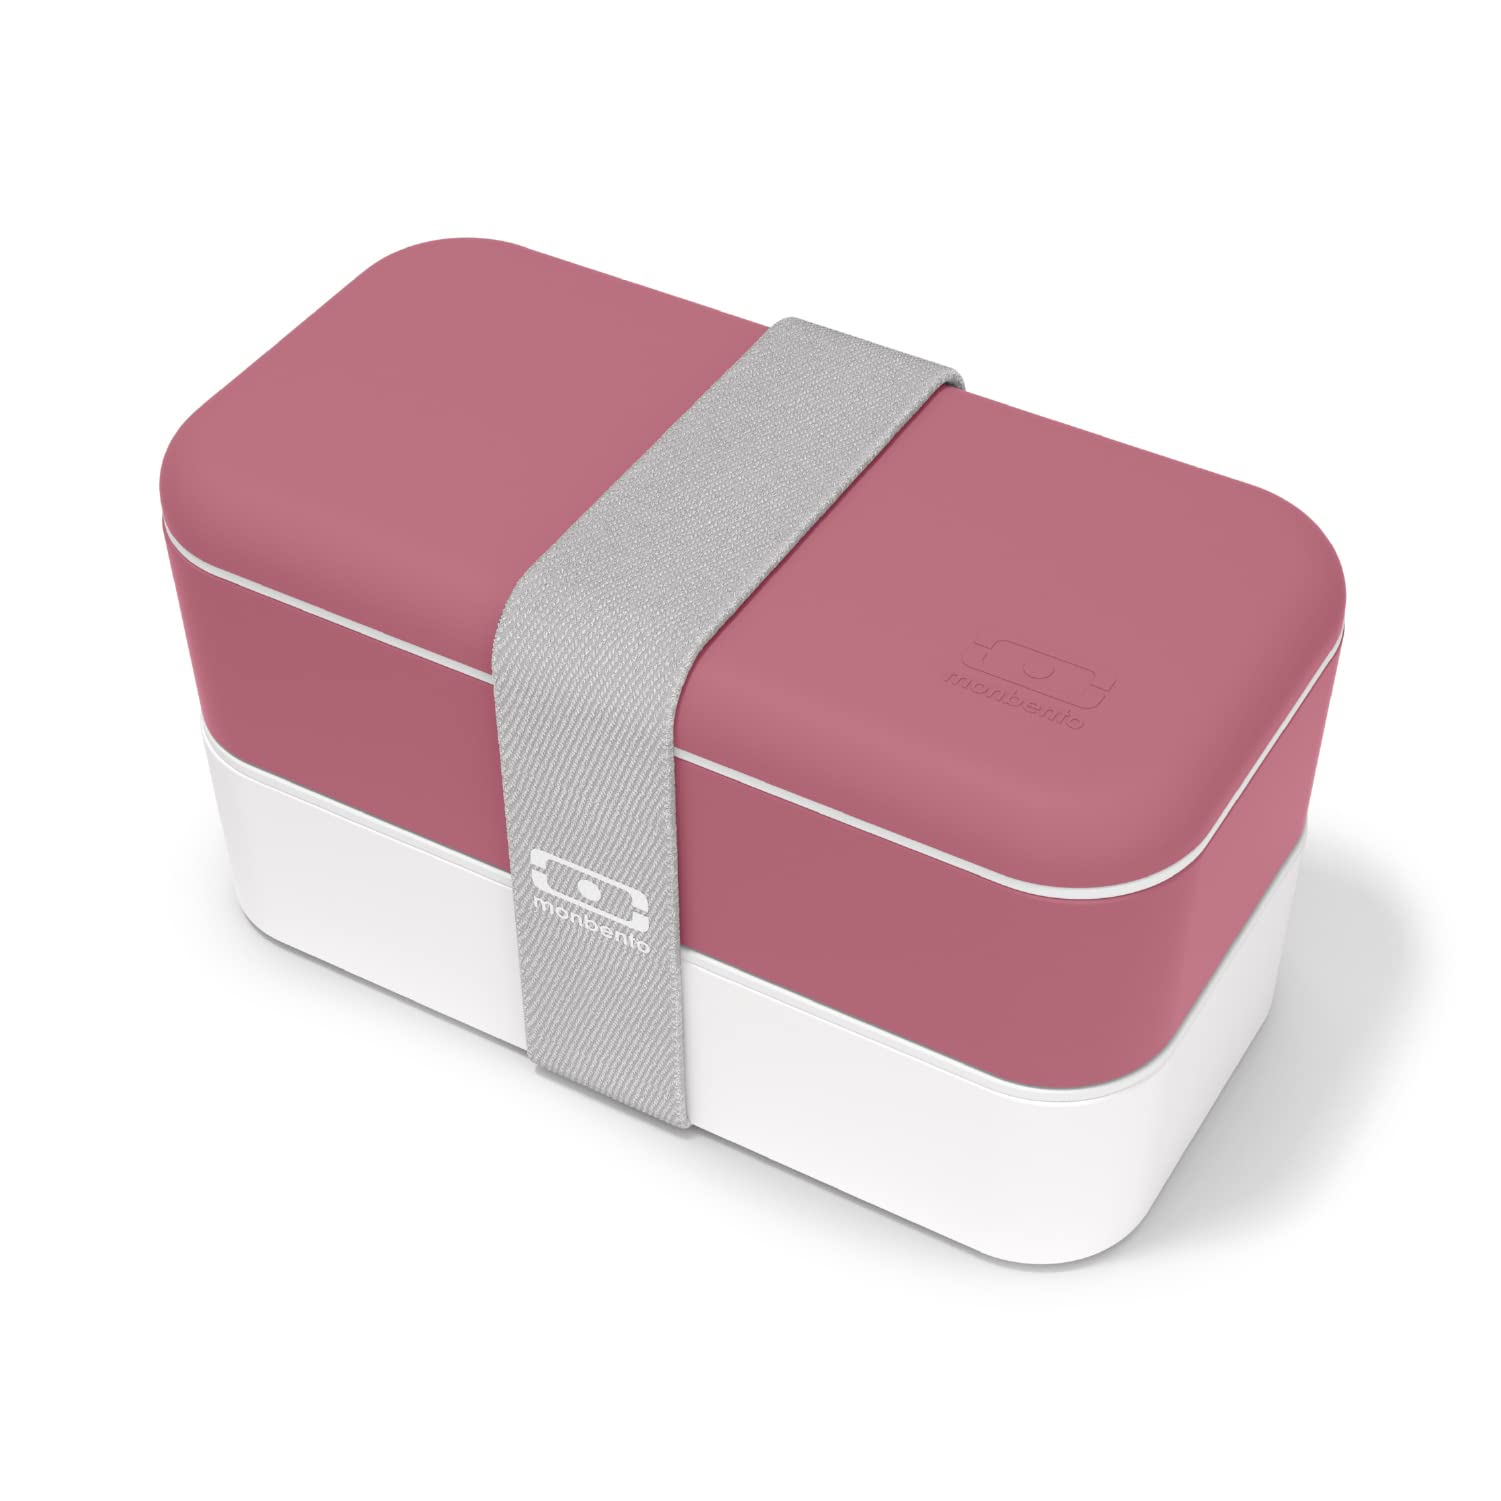 monbento - Bento Box MB Original Blush mit Fächern Made in France - 2 Tier Auslaufsicher Lunch Box Perfekt für Büro/Meal Prep/Schule - BPA Frei - Brotdose Lebensmittelbehälter - Rosa